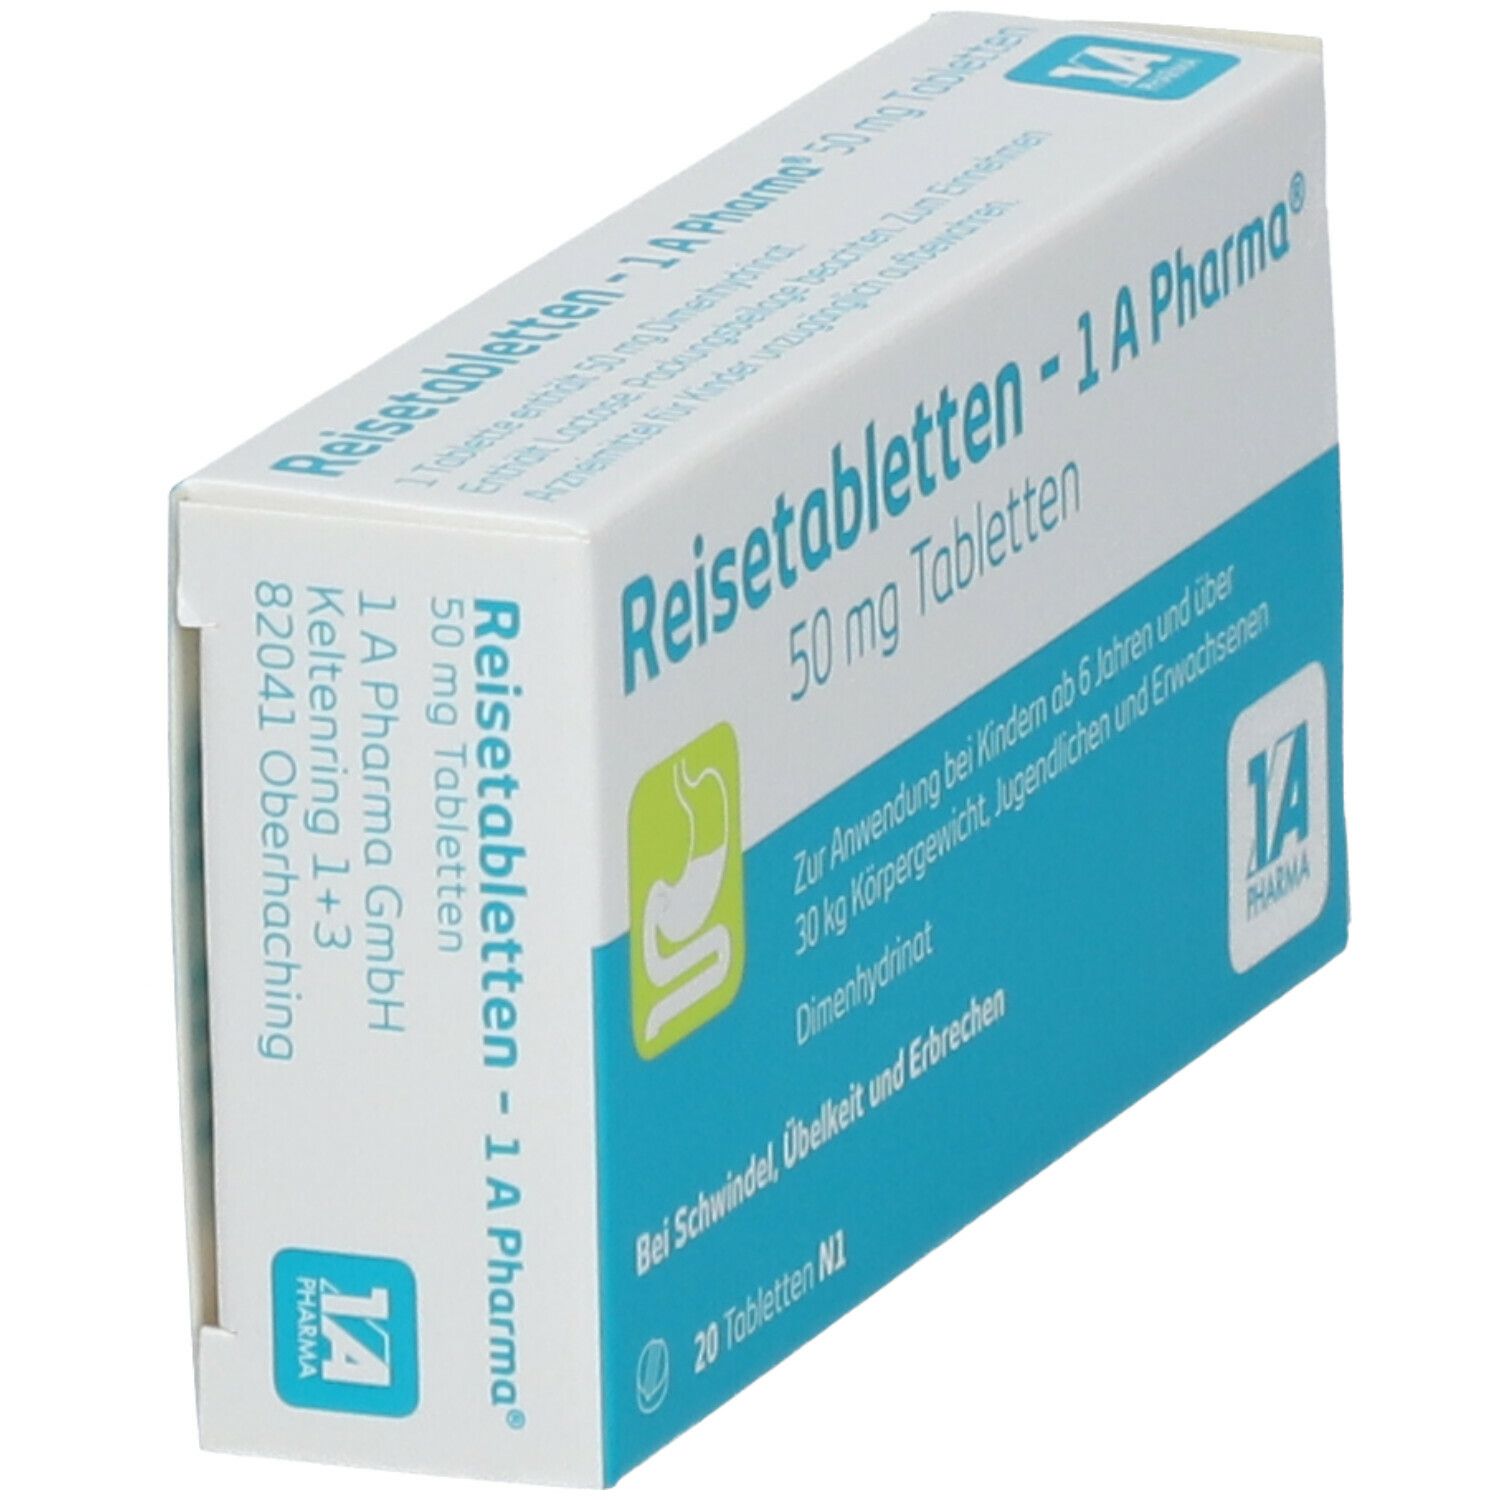 Reisetabletten - 1A Pharma®